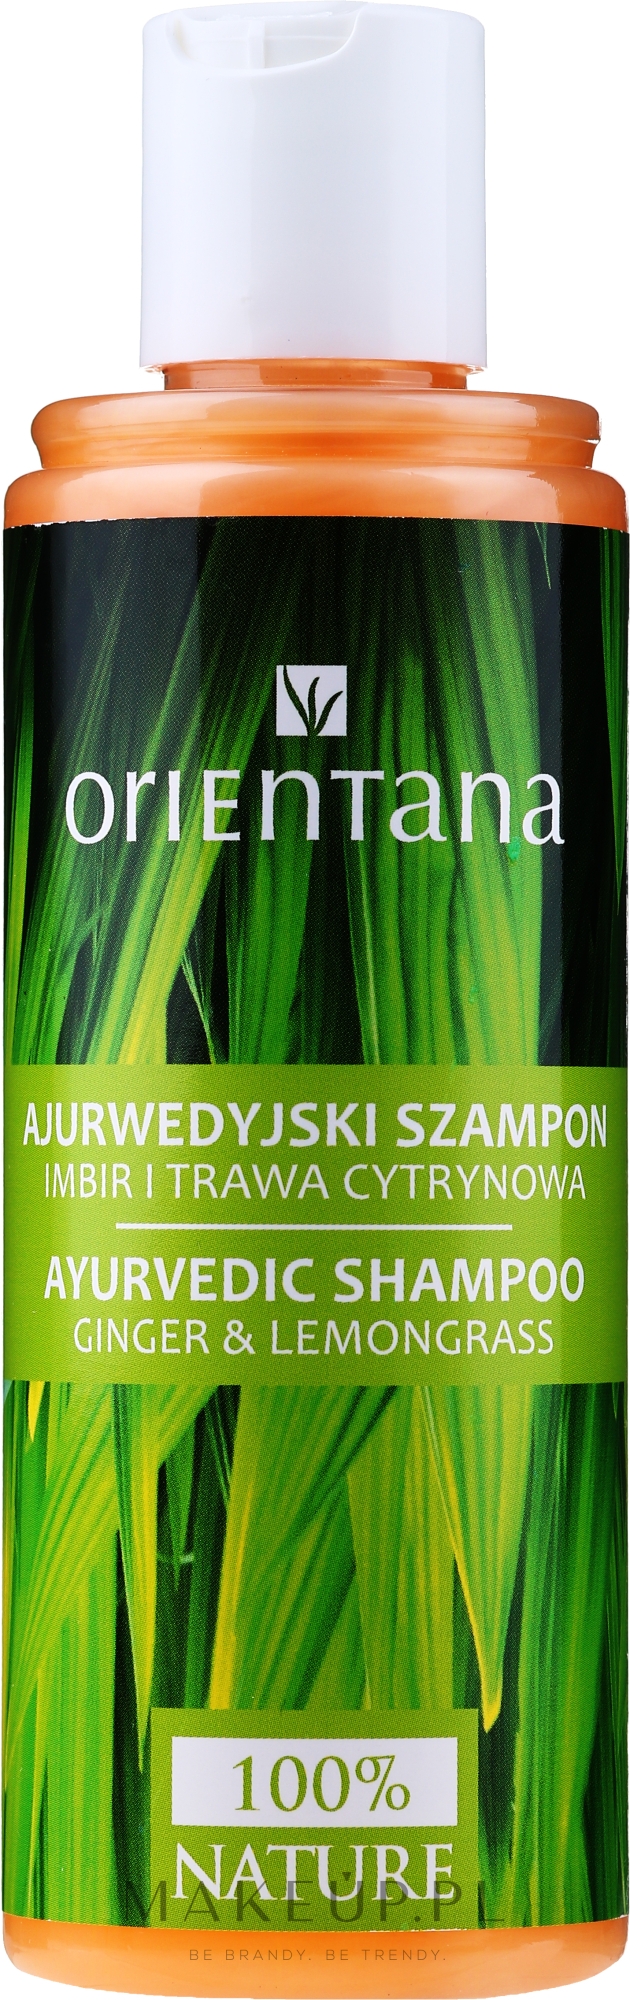 orientana ajurwedyjski szampon do włosów imbir i trawa cytrynowa